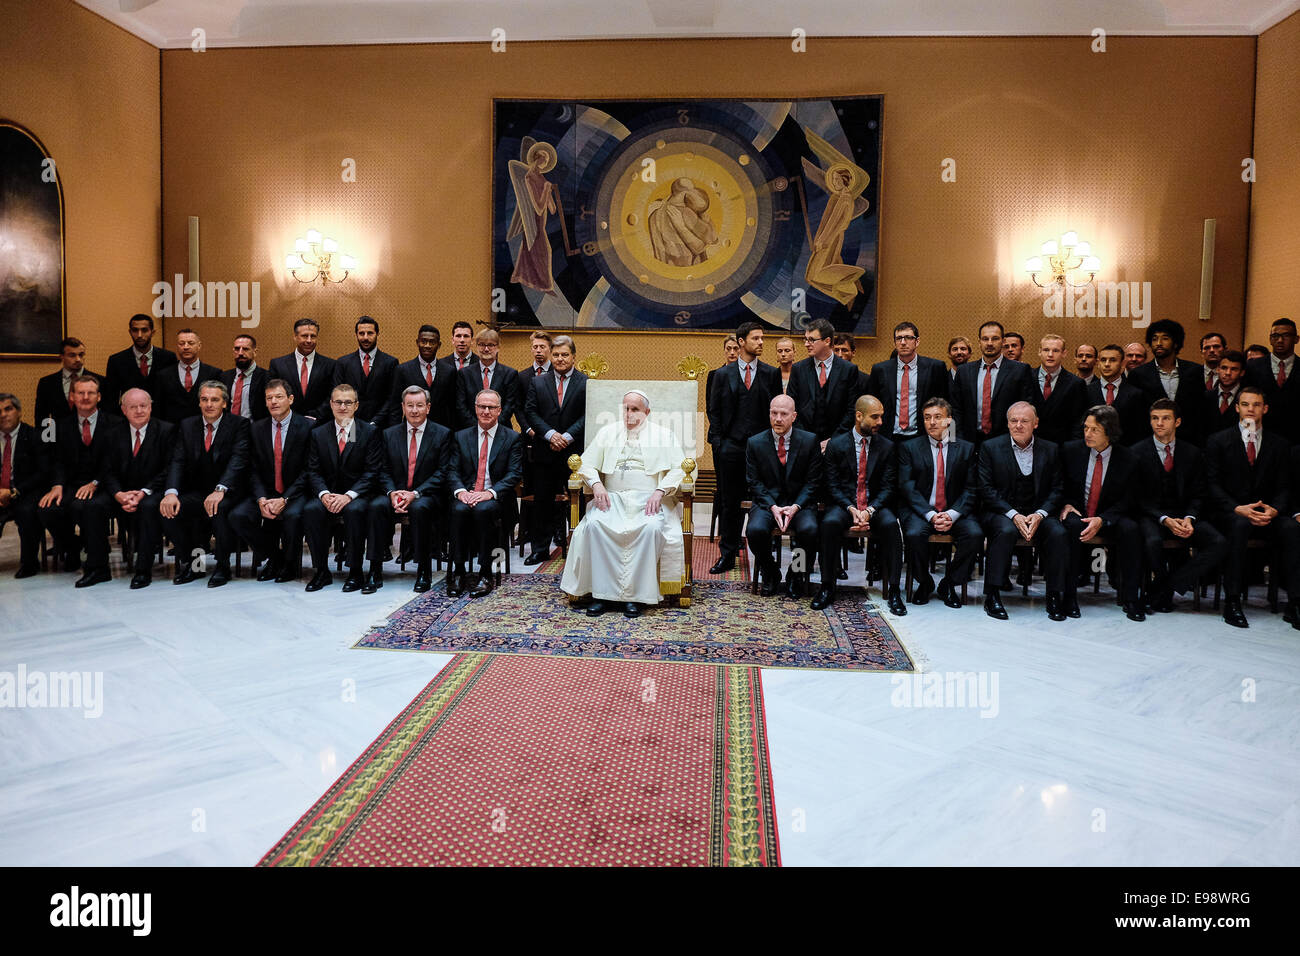 El papa San Francisco tiene una Audiencia General en el Vaticano. 22 Oct, 2014 - Equipo de fútbol FC Bayern München. Foto de stock